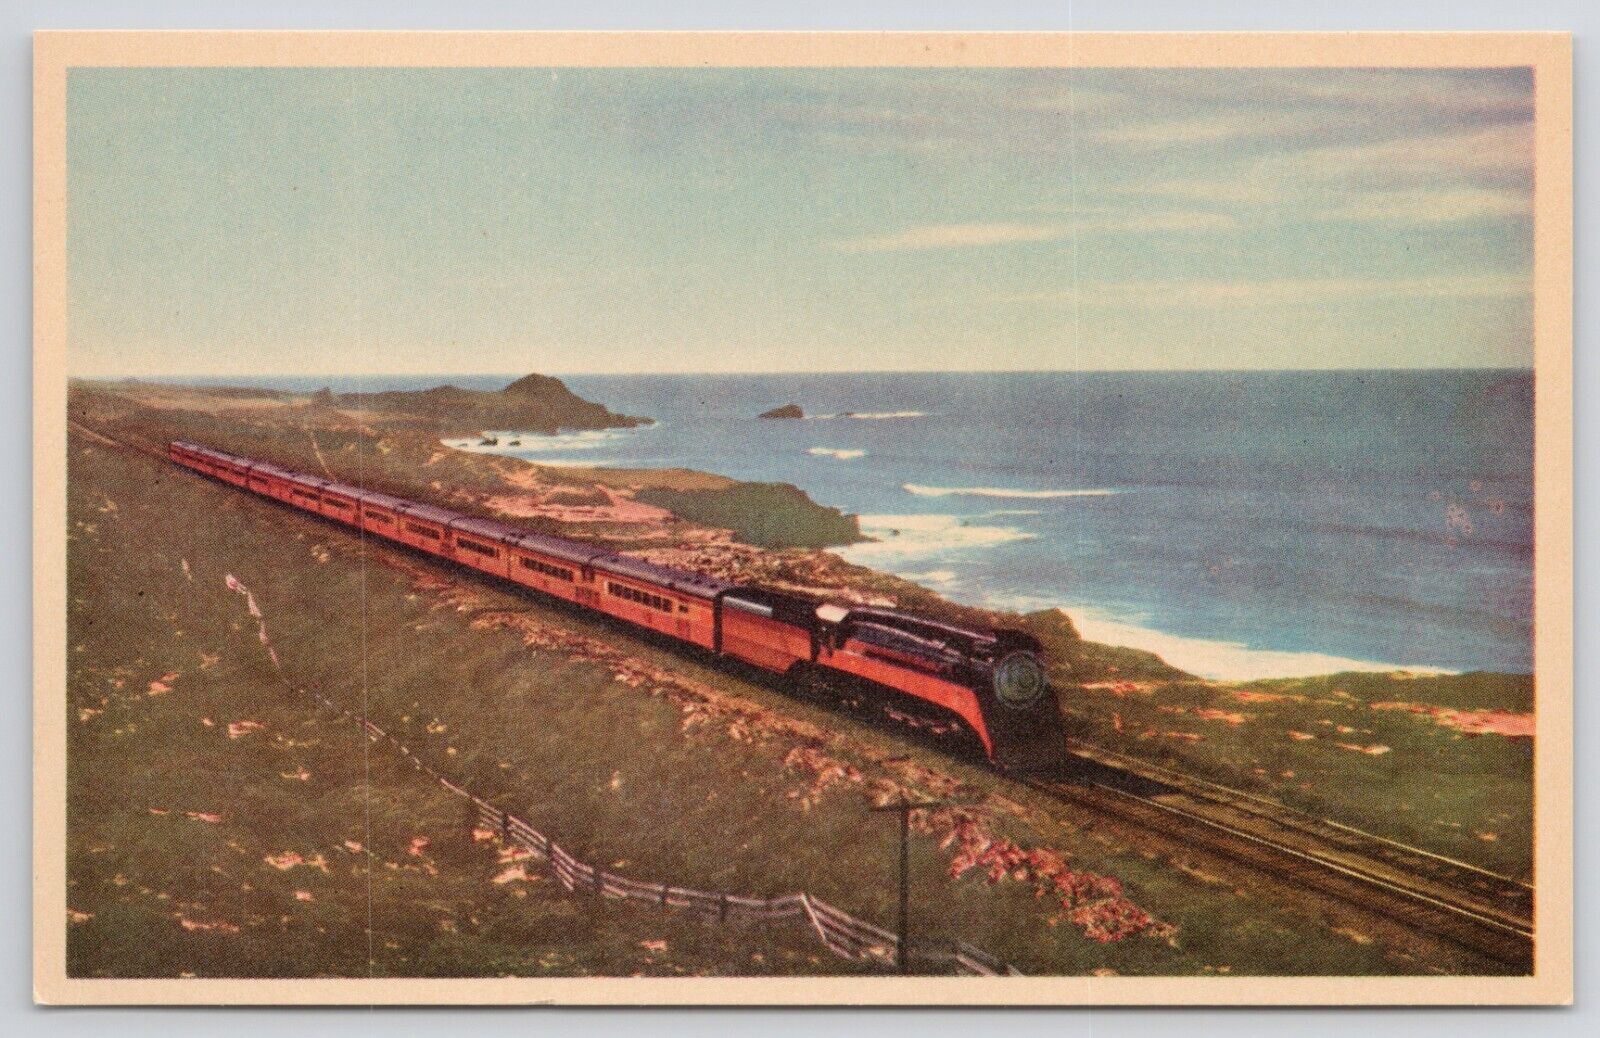 Southern Pacific Train Railroad Shore of Pacific Ocean White Border Postcard